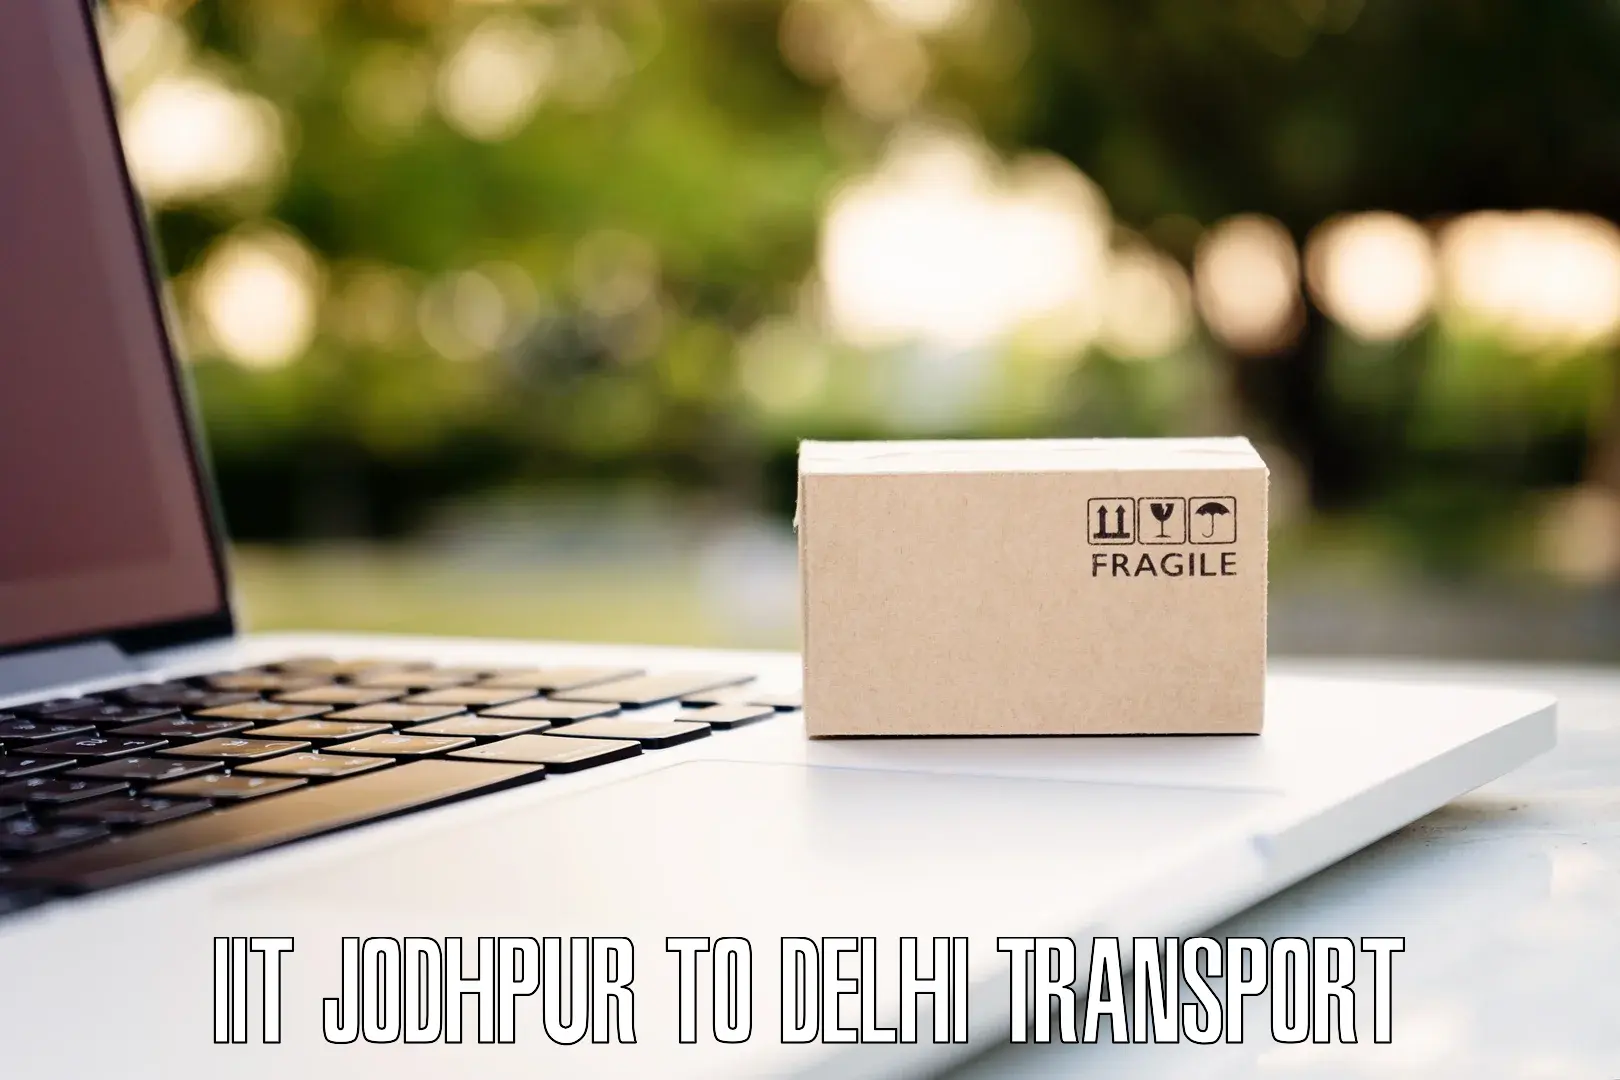 Transport shared services IIT Jodhpur to Kalkaji